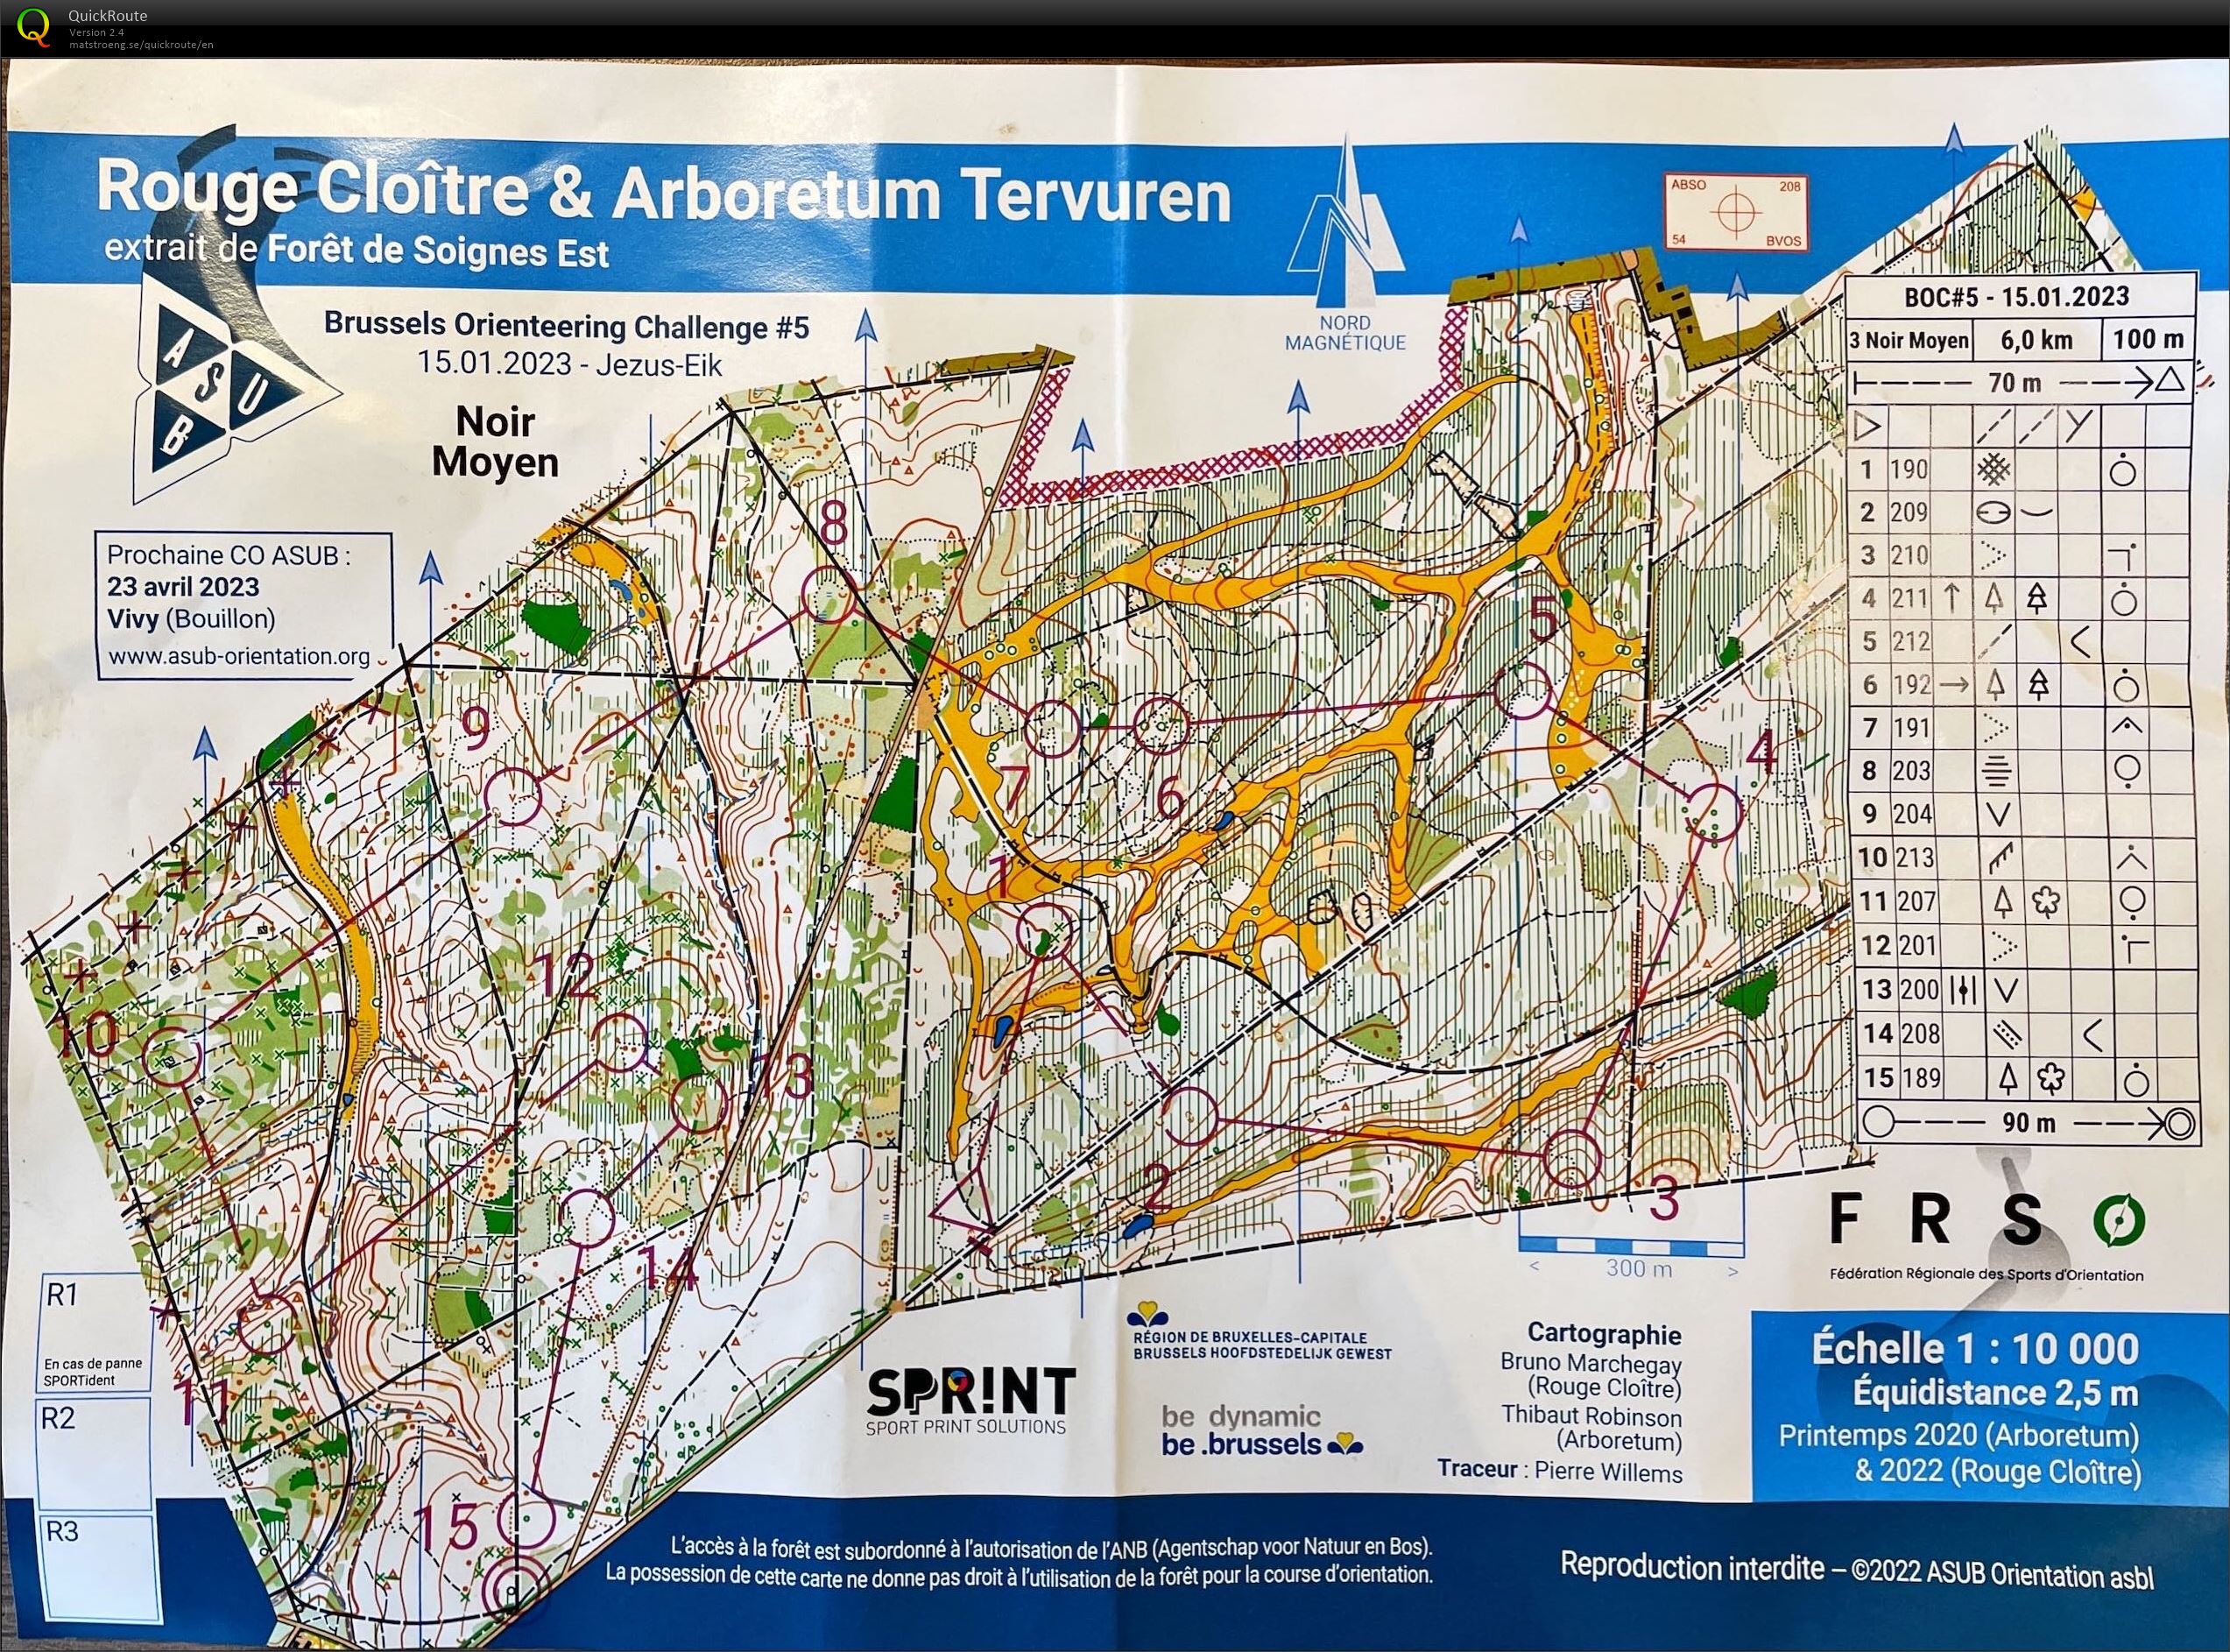 Brussels Orienteering Challenge #5: Rouge Cloitre & Arboretum Tervuren (15/01/2023)